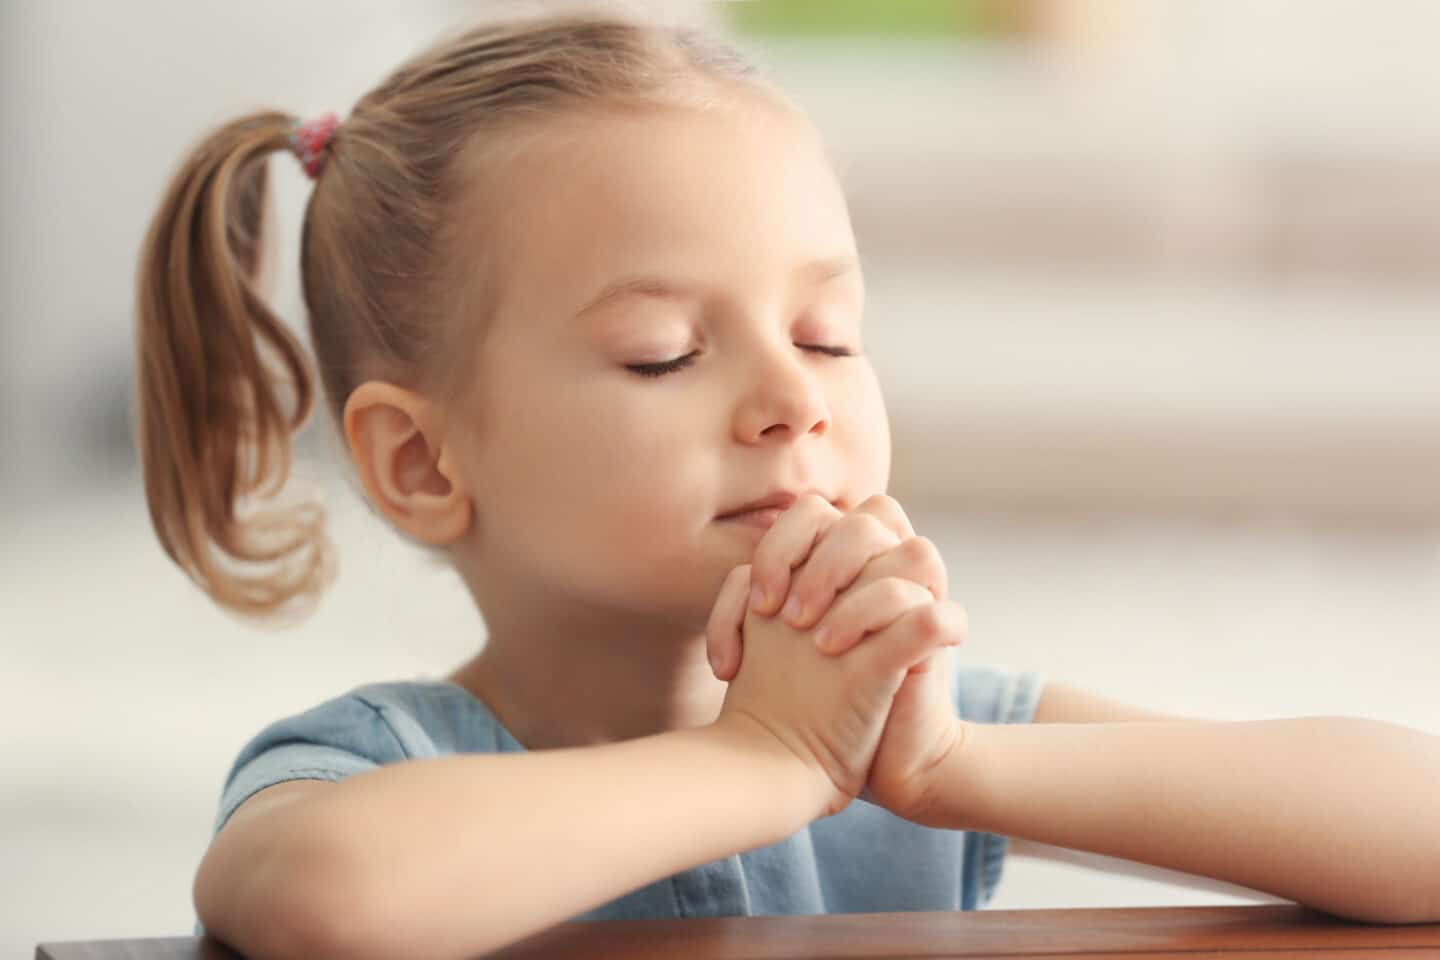 little girl praying